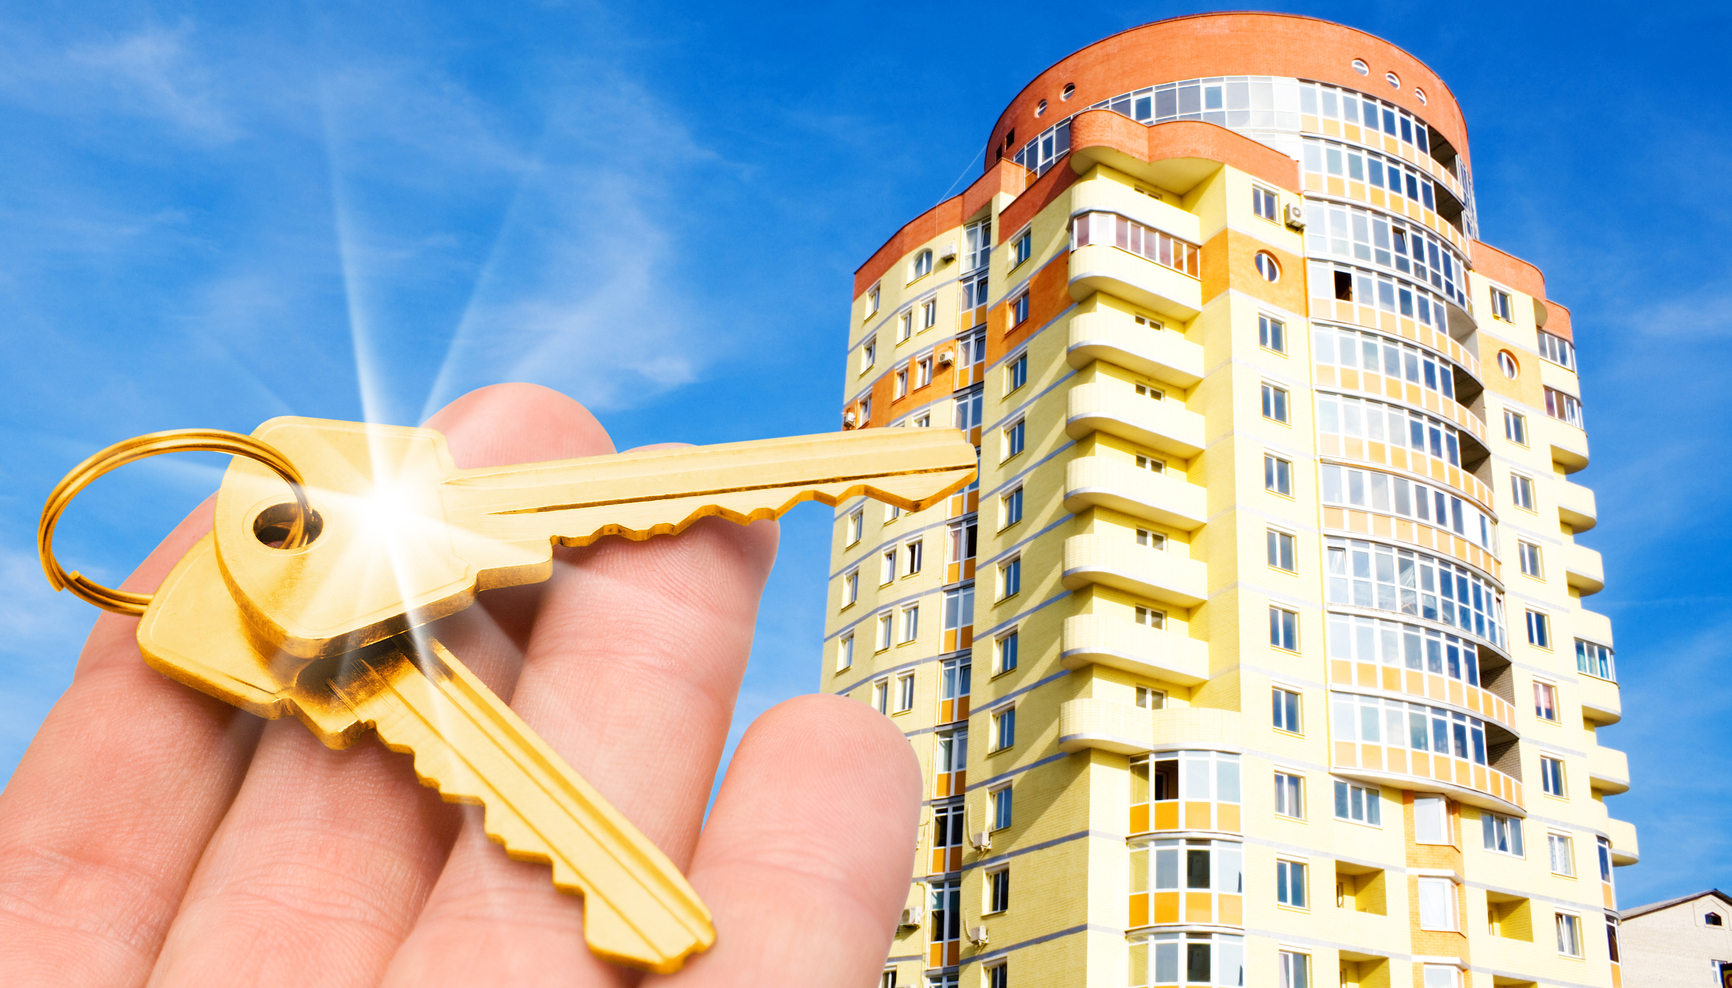 Стоимость посуточной аренды в Омске выросла на 27 % #Омск #Общество #Сегодня